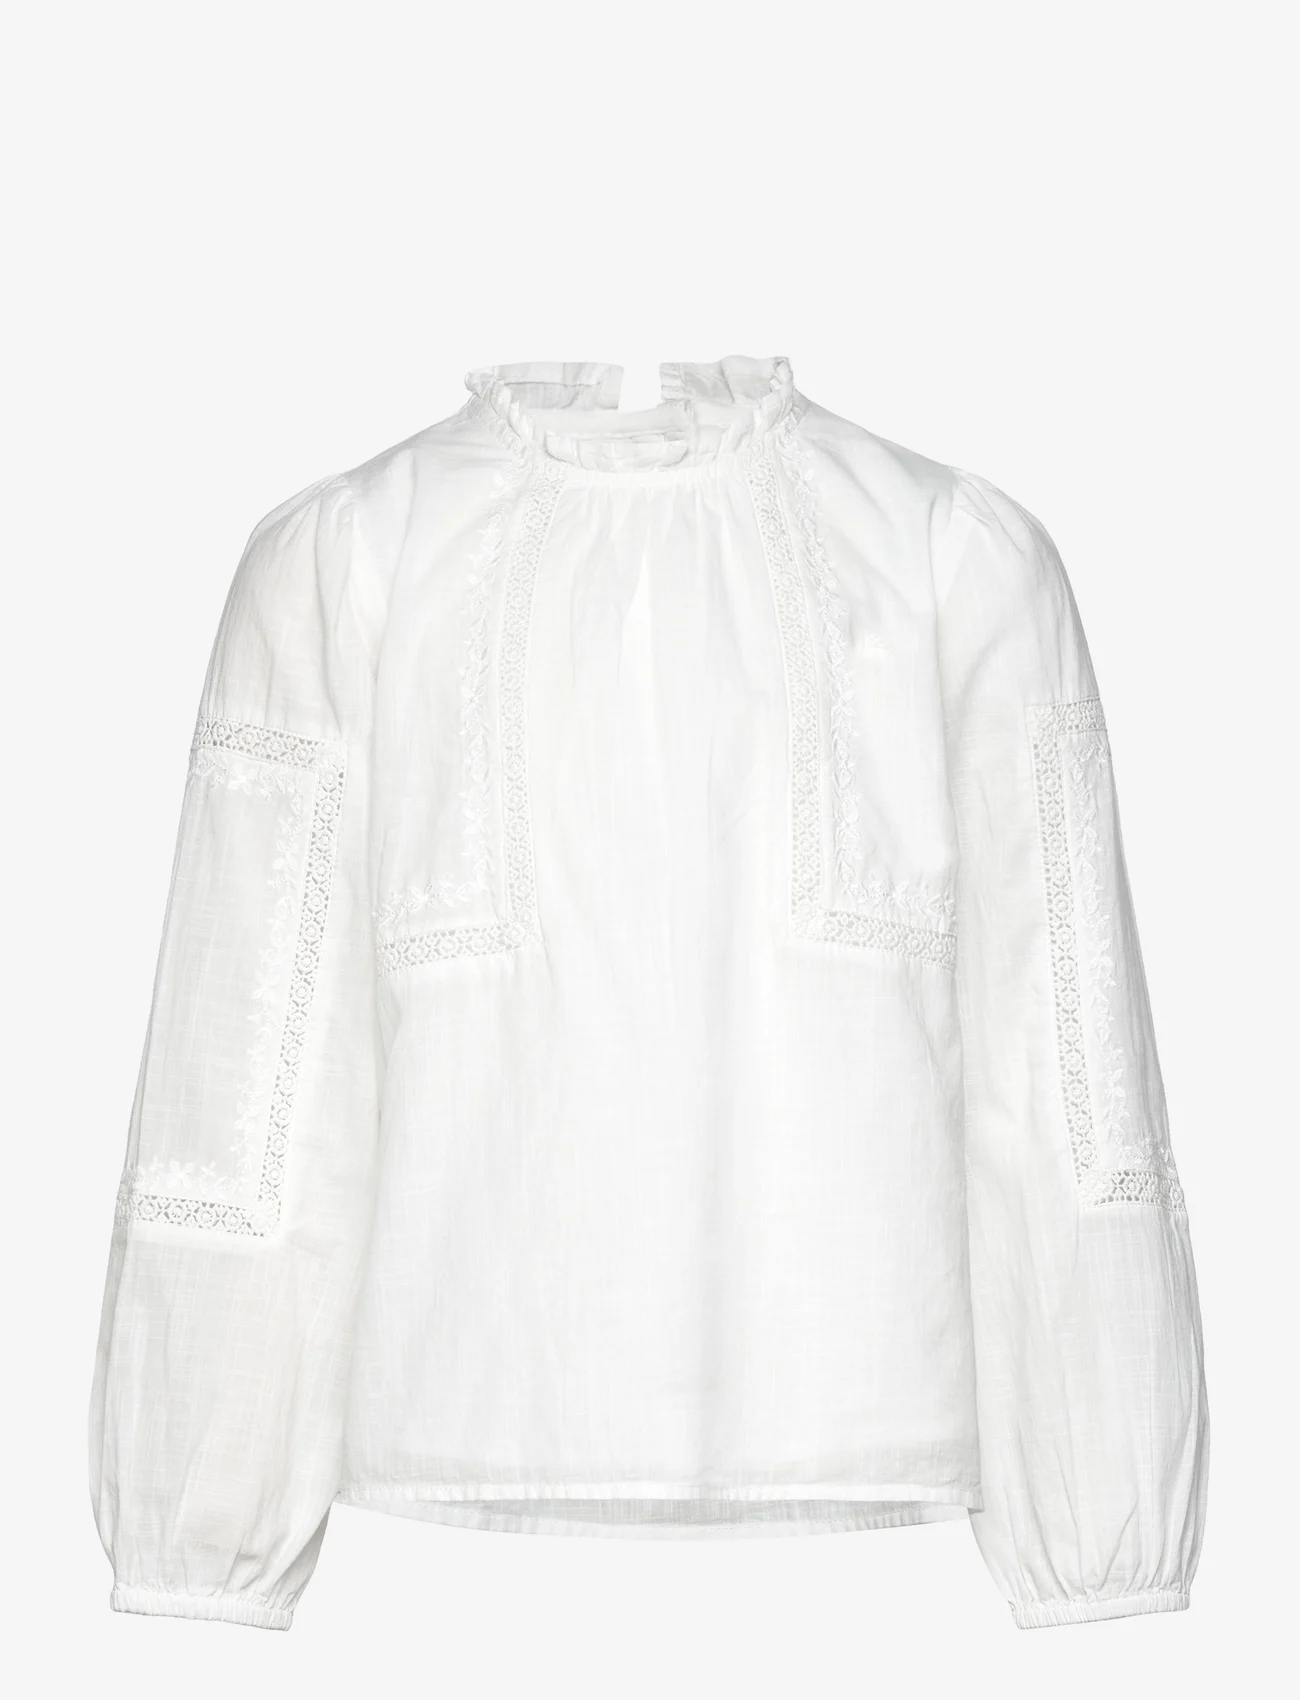 Mango - Embroidered blouse - gode sommertilbud - natural white - 0